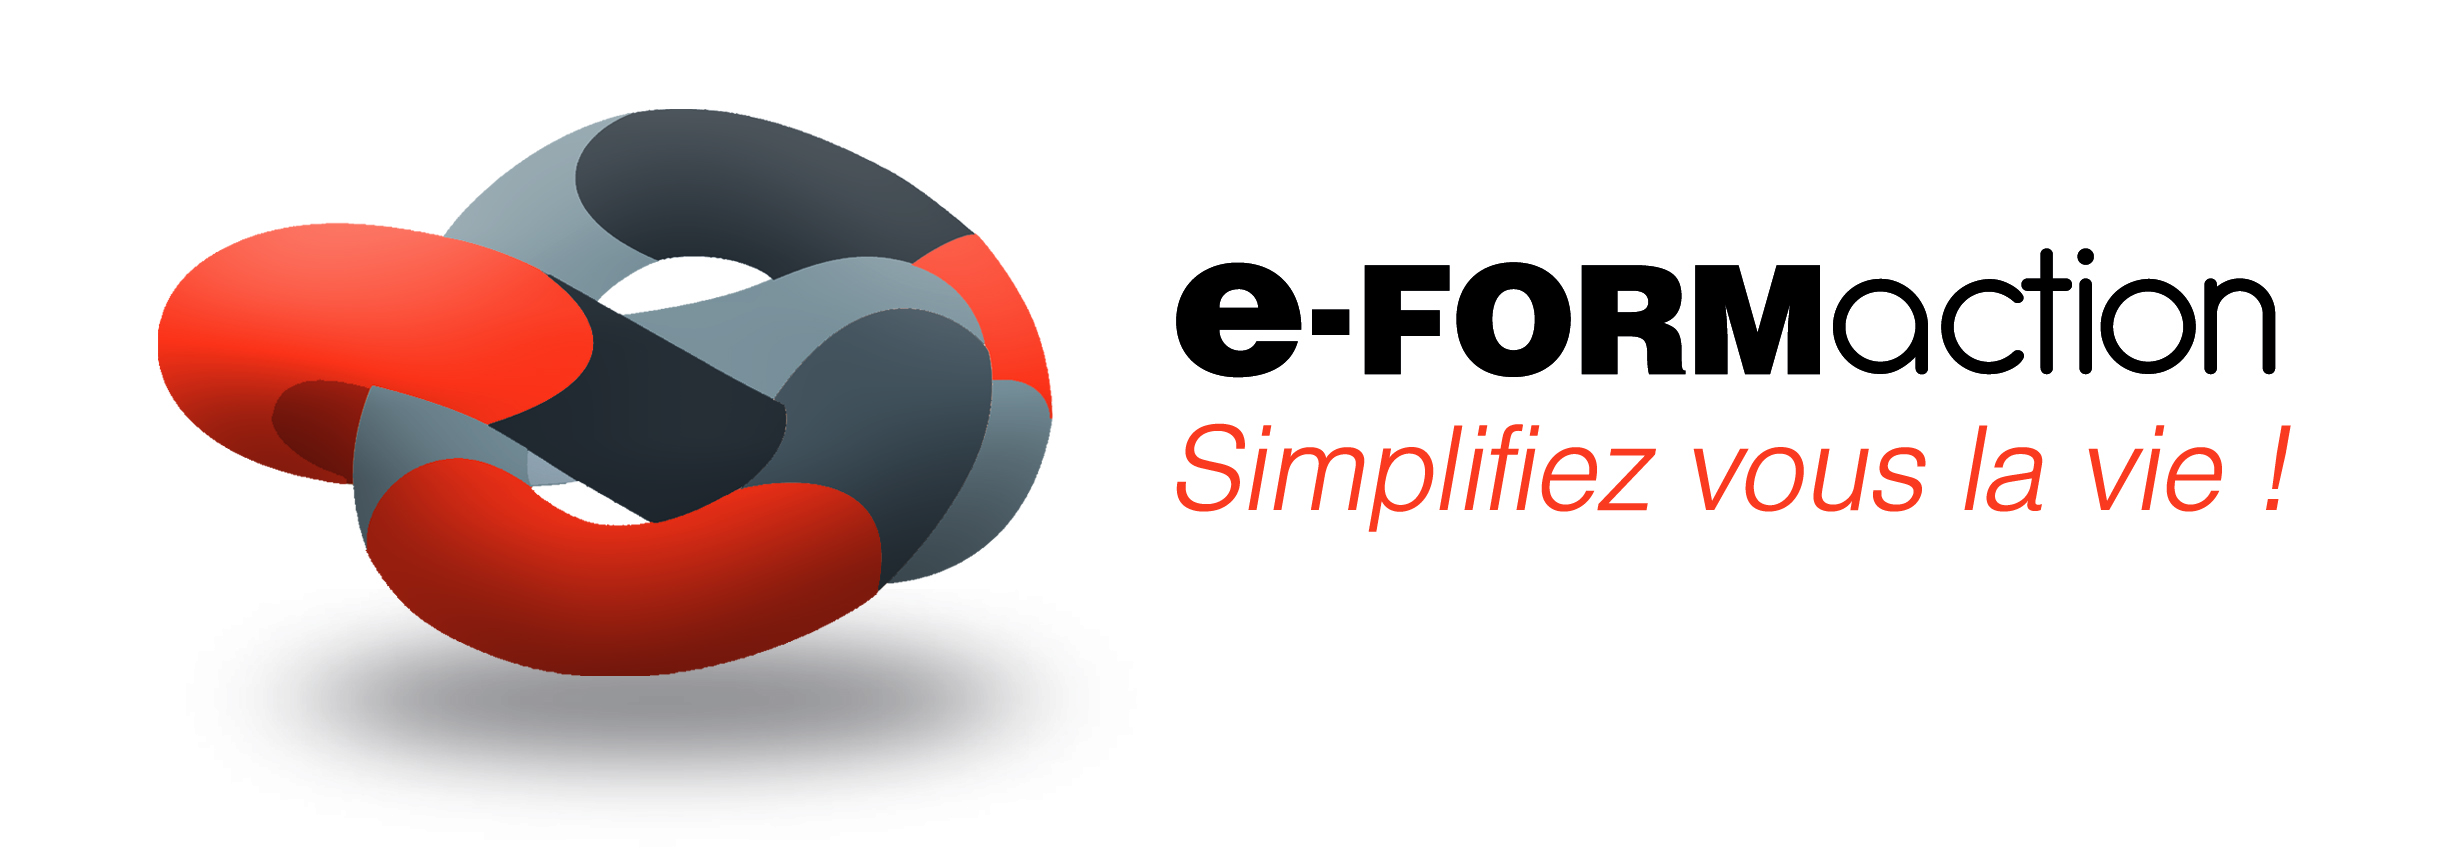 logo e-FORMaction